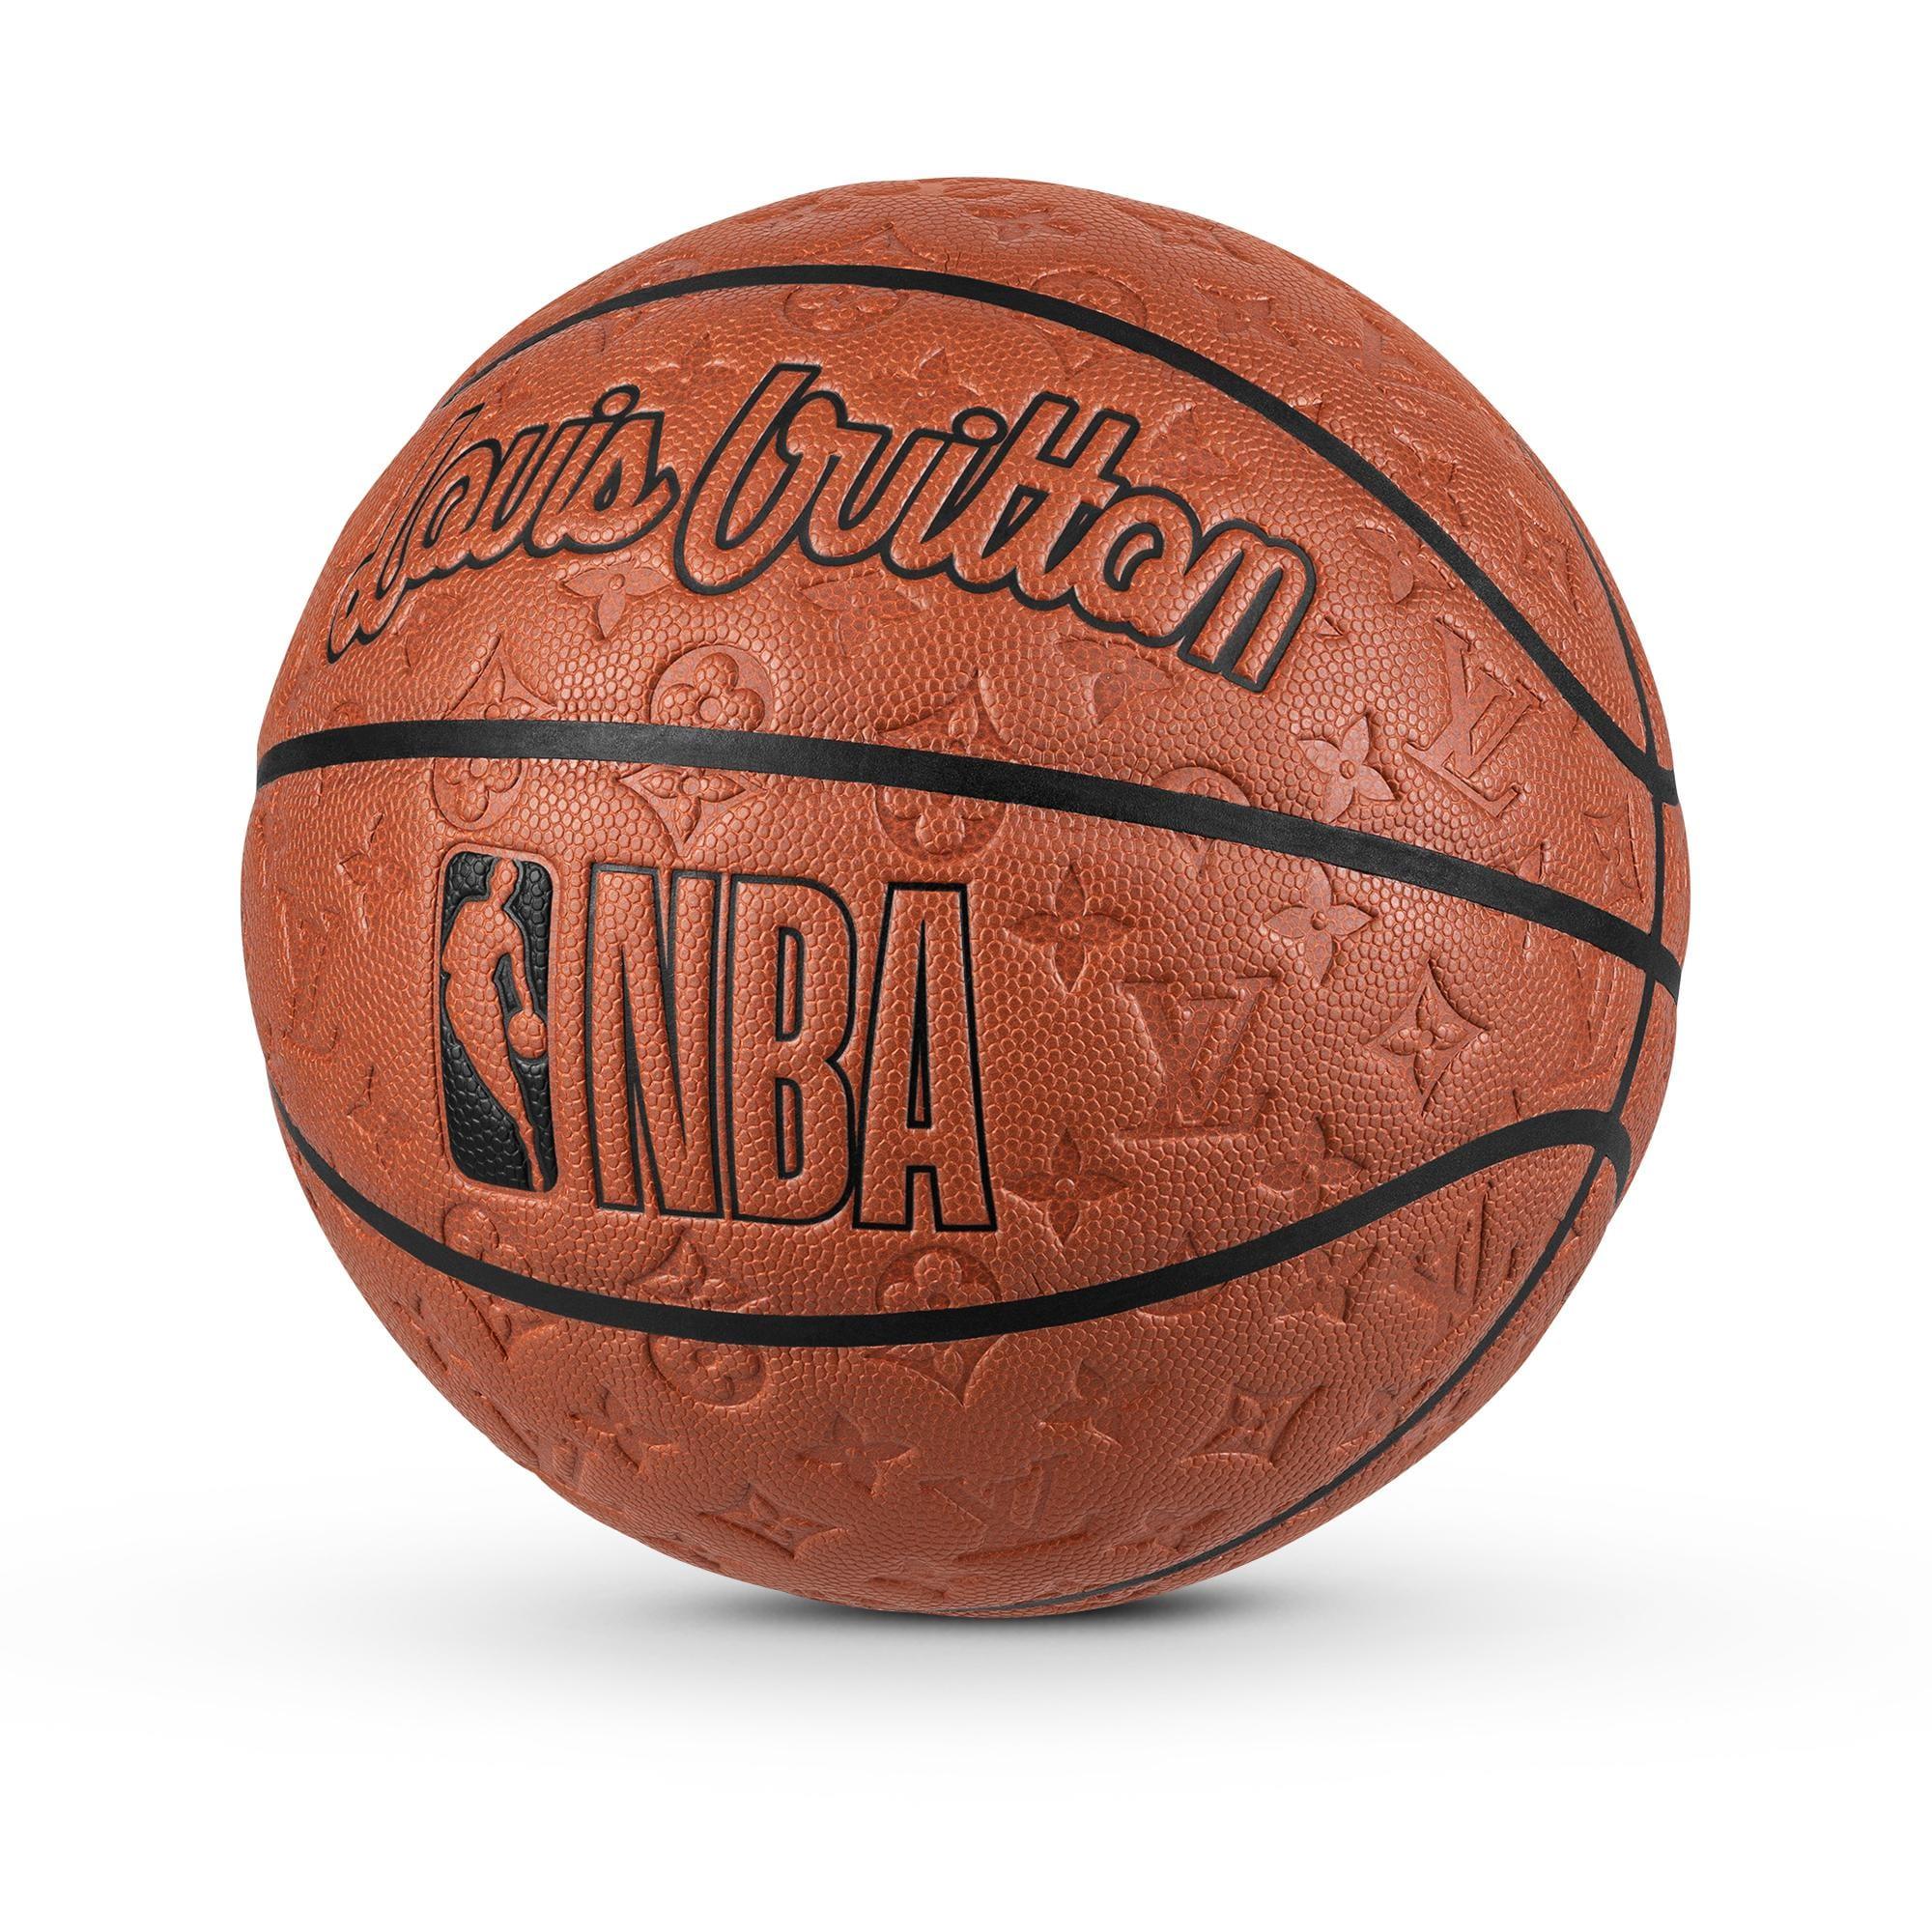 Release 2 Jun] Louis Vuitton x NBA Collection 2022